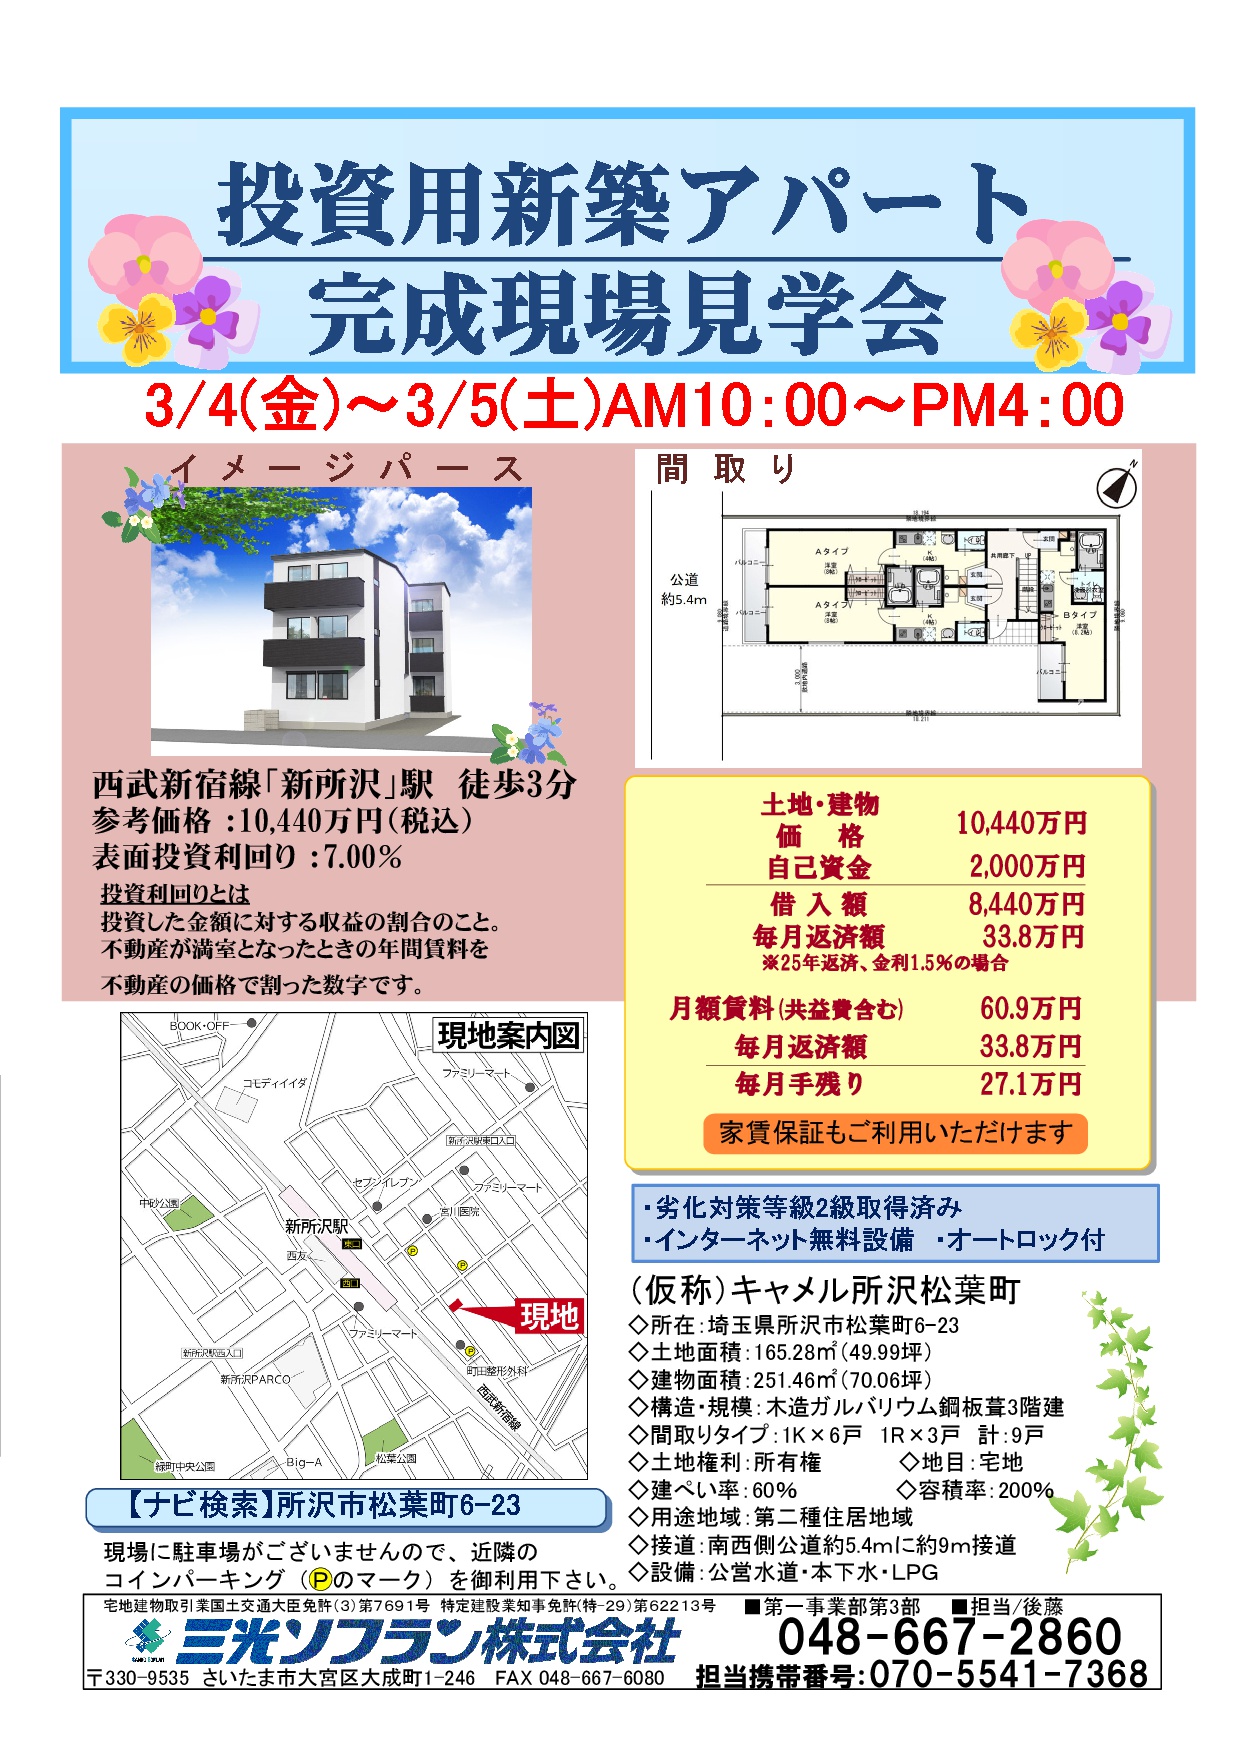  （仮称）キャメル所沢松葉町 新築一棟売アパート完成現場見学会開催！ 